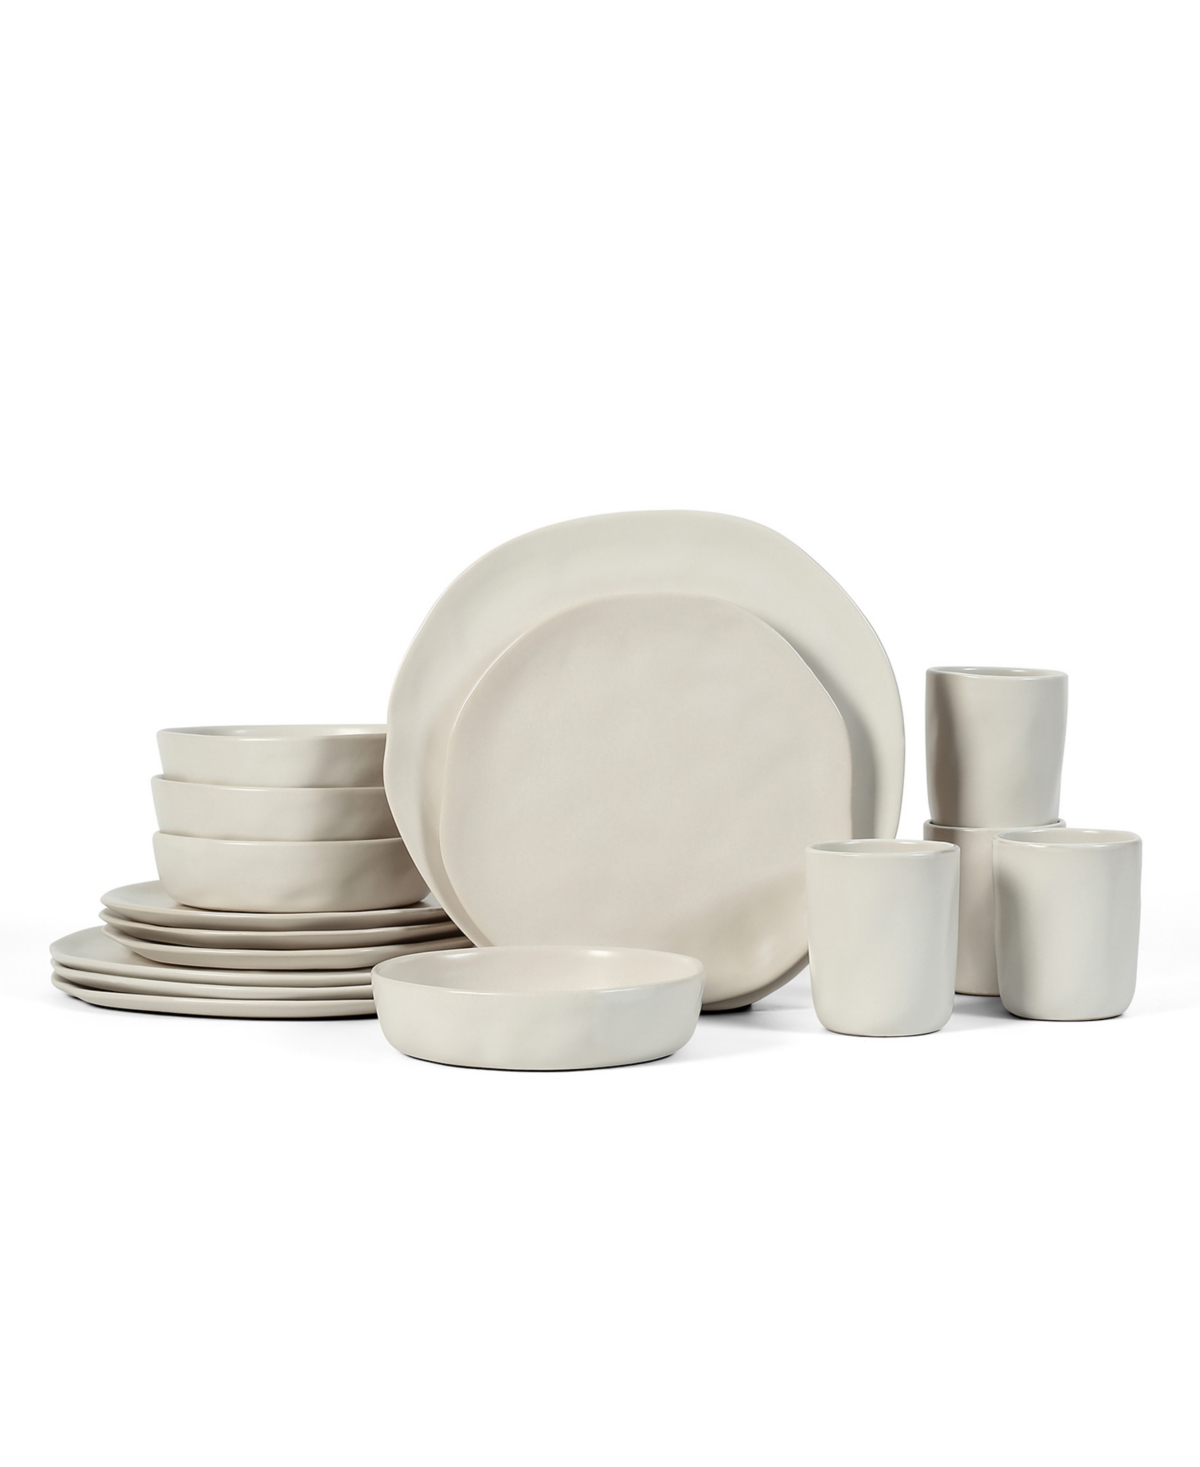 Hekonda Stoneware 16 Pieces Dinnerware Set, Service for 4 - Beige